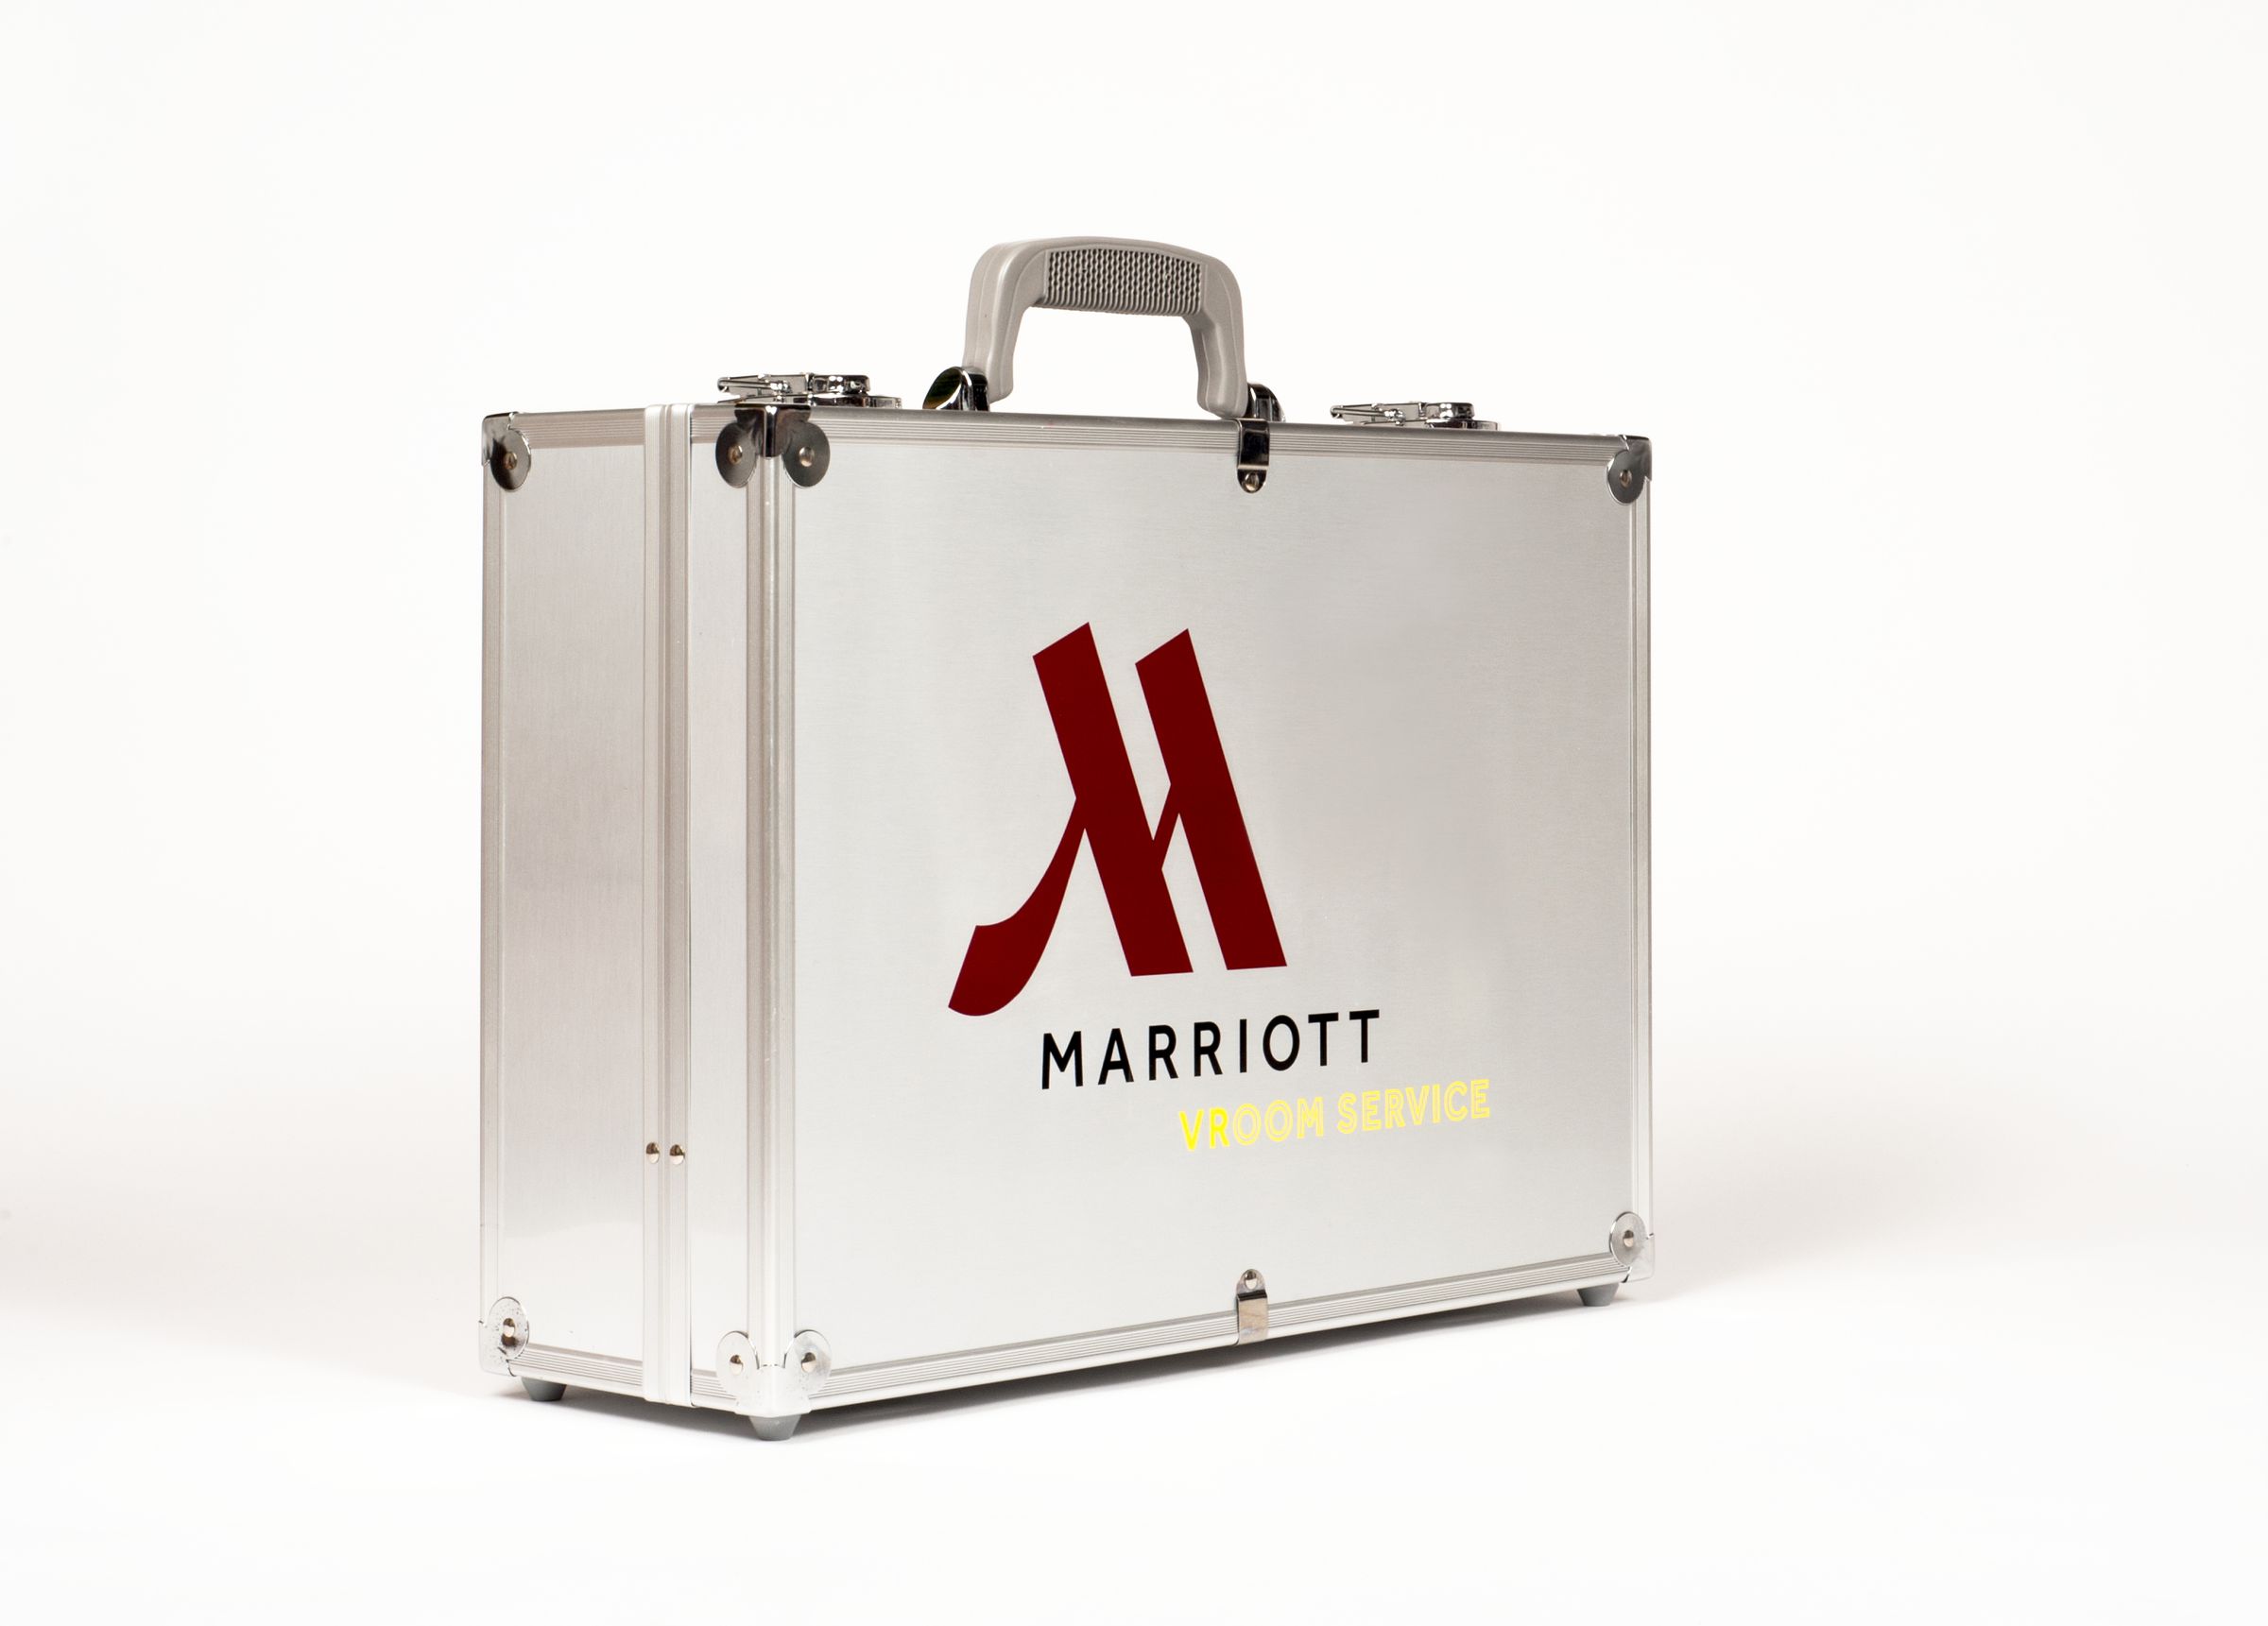 Marriott VR